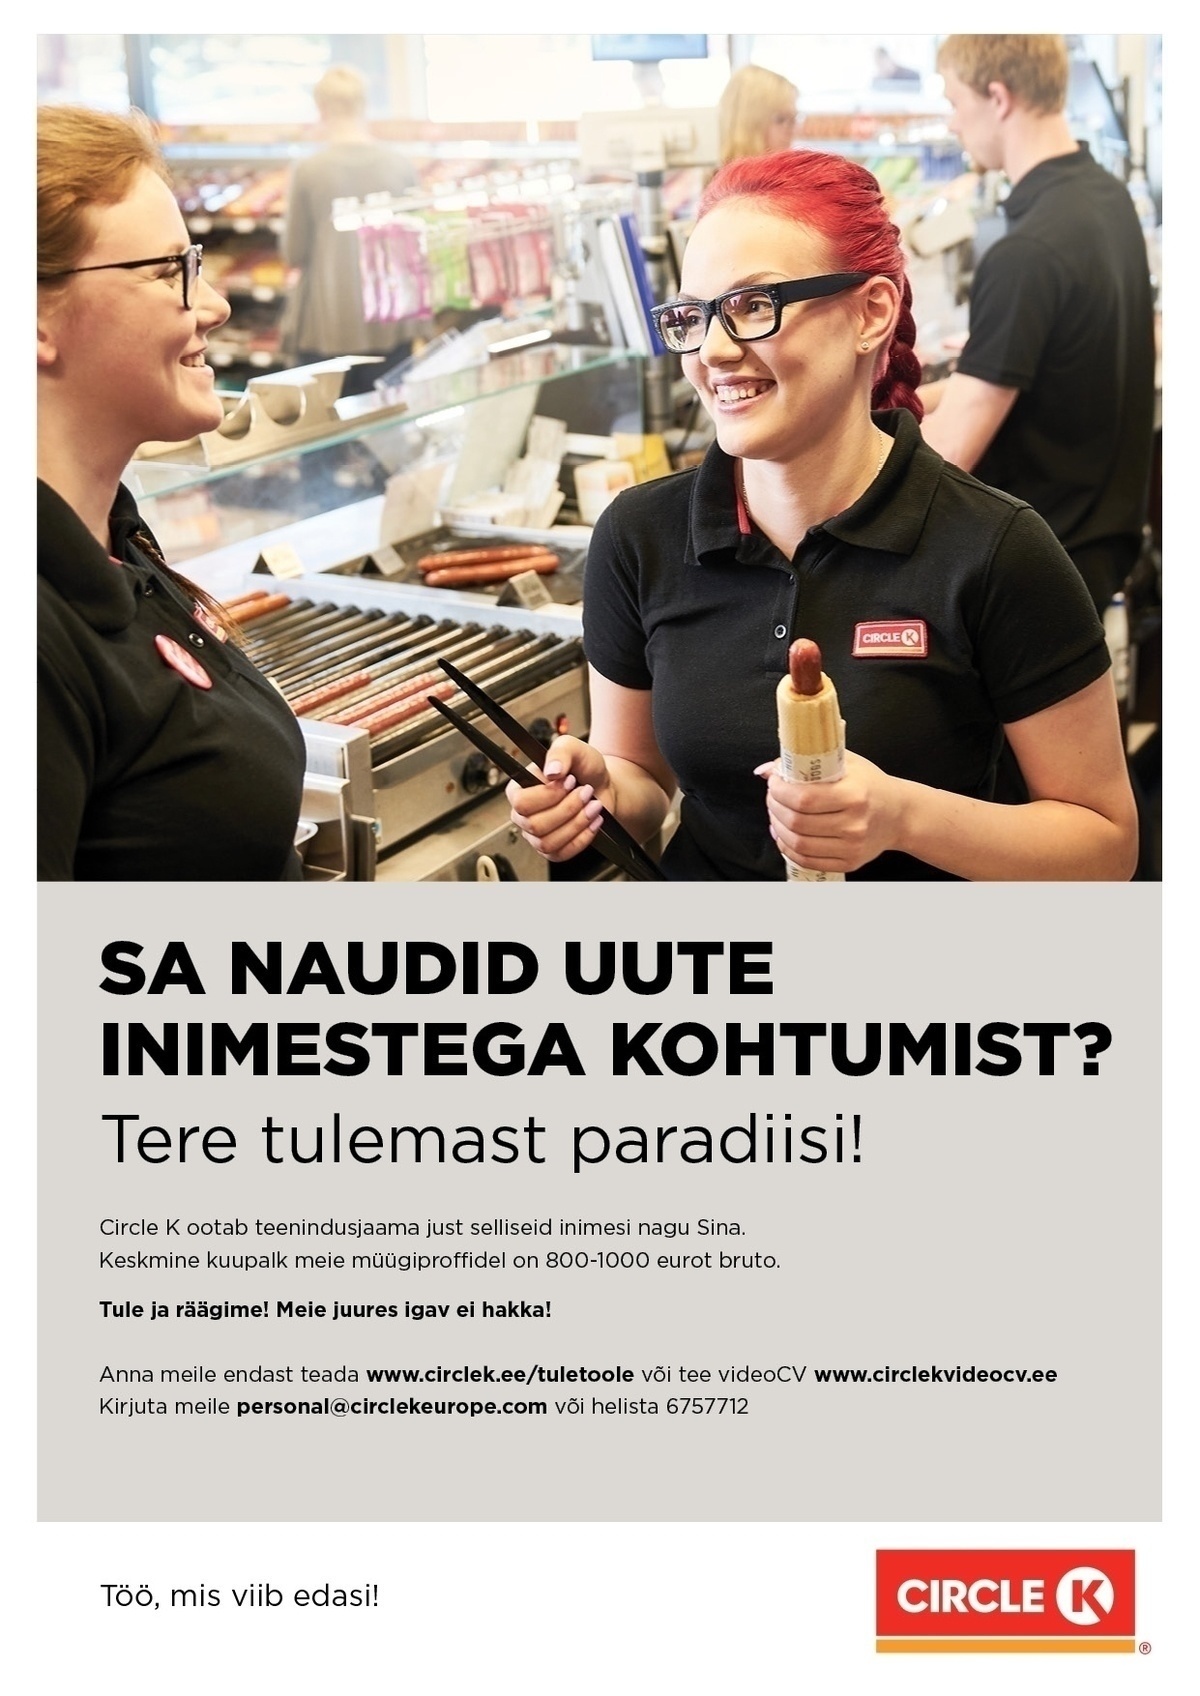 Circle K Eesti AS Müüja-klienditeenindaja Sikupilli teenindusjaama